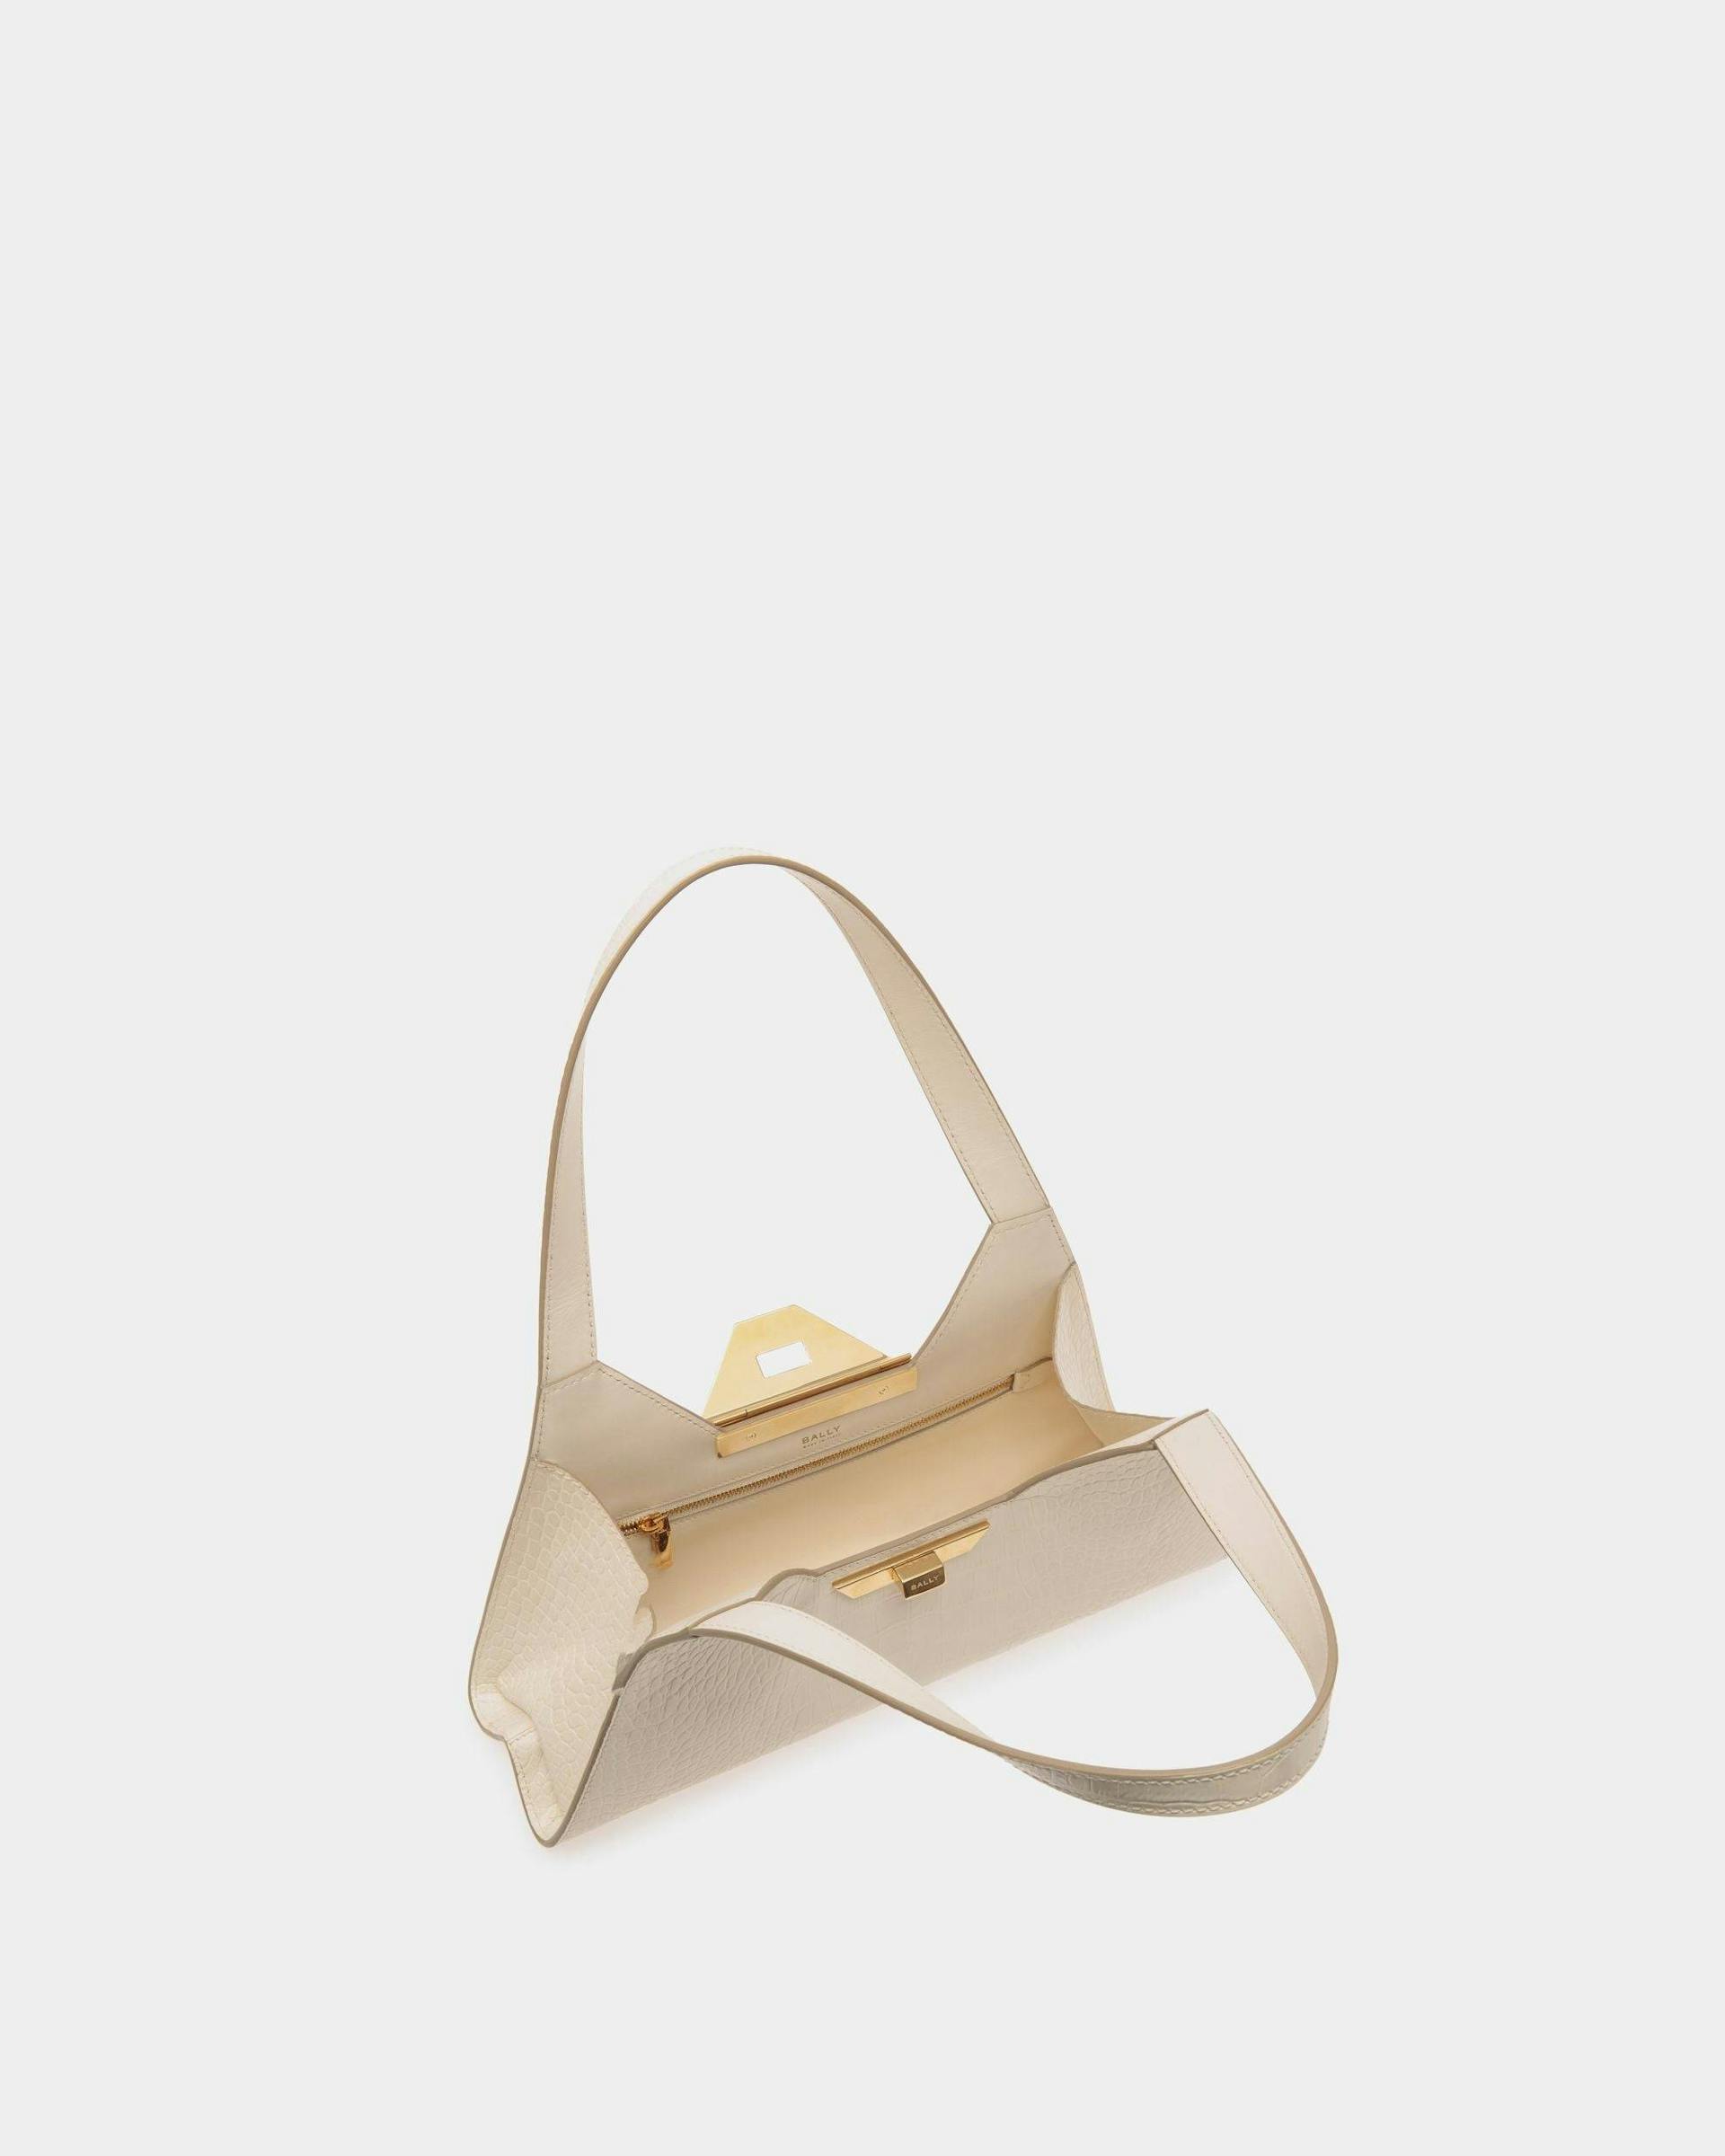 Women's Tilt Small Shoulder Bag In White Crocodile Print Leather | Bally | Still Life Open / Inside